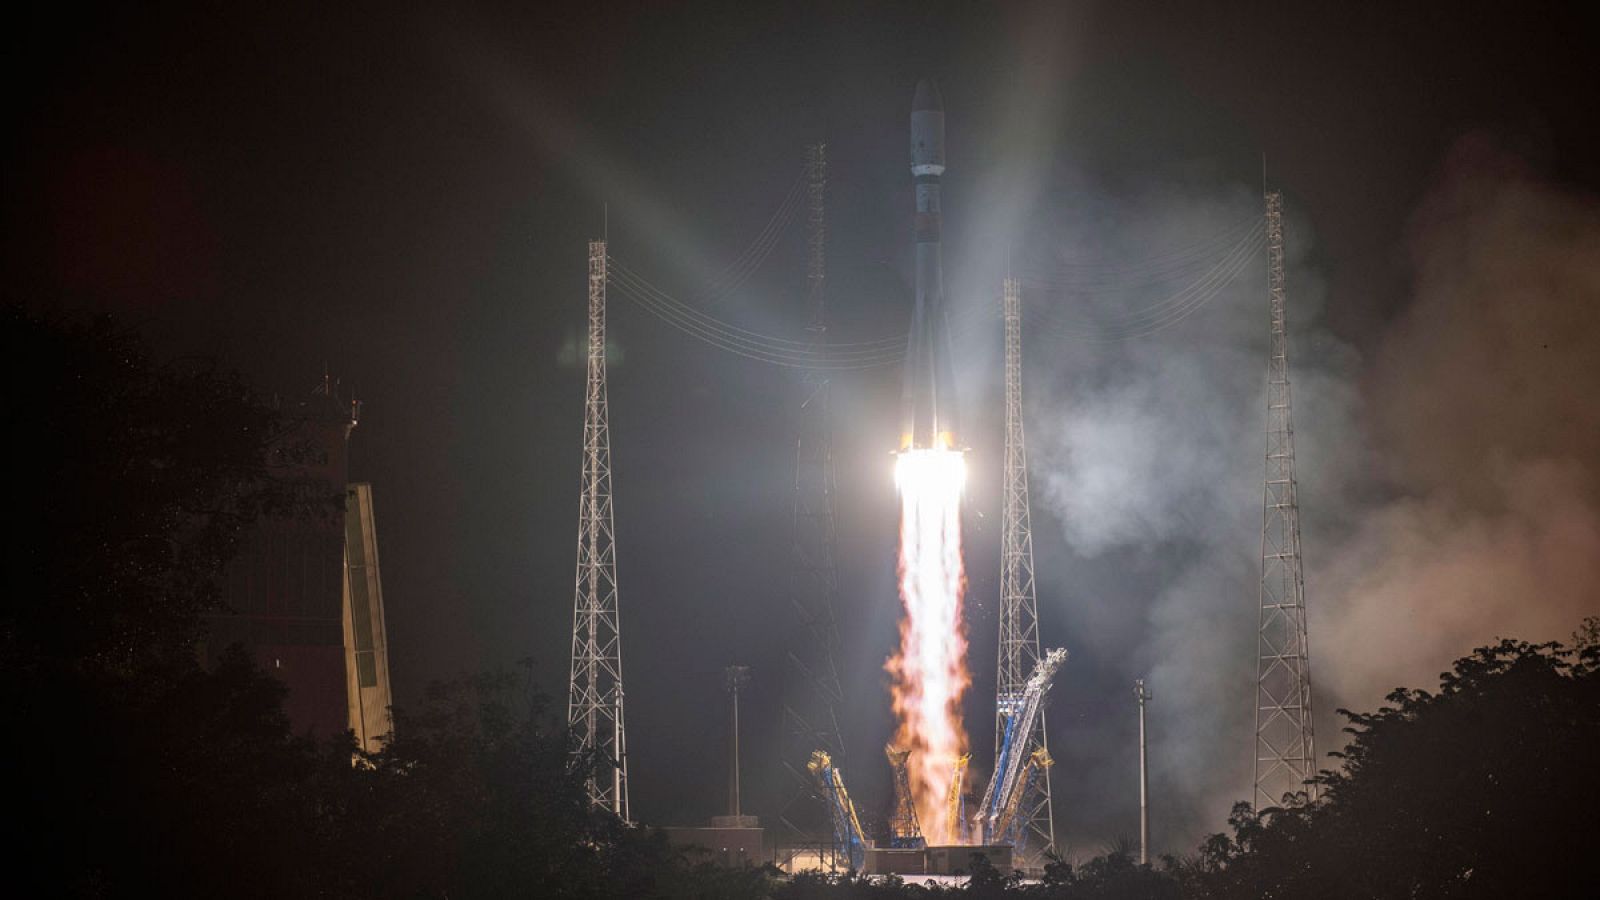 Después de anunciar el retraso en el lanzamiento del cohete Soyuz-Fregat, con la misión Cheops ha iniciado su travesía a las 05:54 hora local (08:54 GMT) en un segundo intento, tras el aviso de un fallo en uno de sus componentes. La misión, instigada